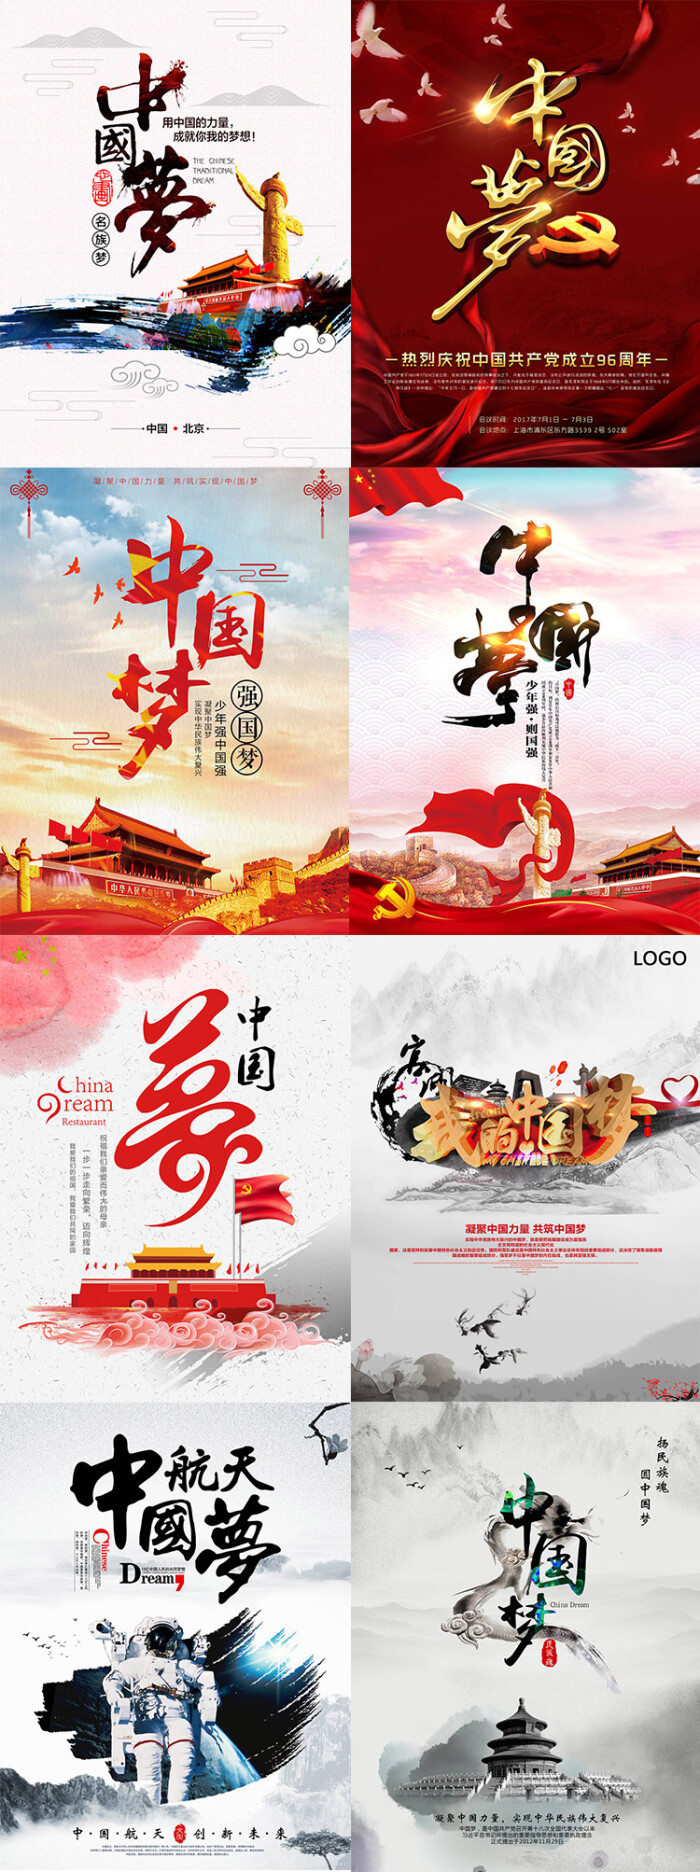 中国梦我的强国梦中国红思想建设展板宣传海报挂画psd素材模版